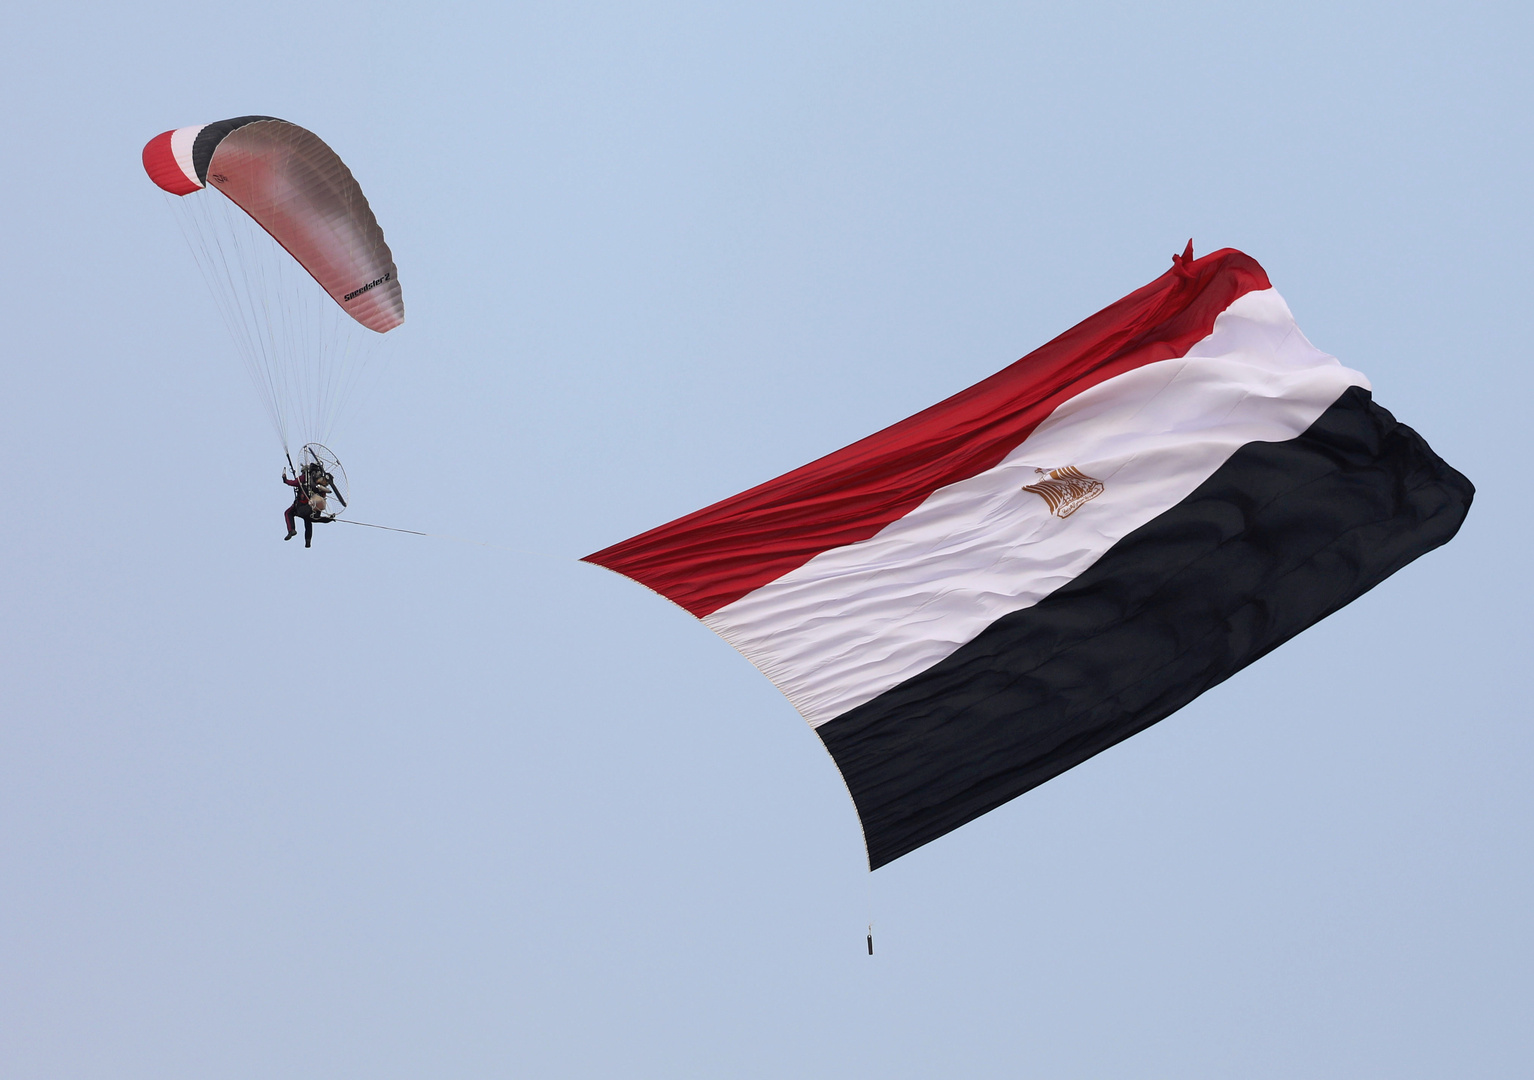 مصر تعلن عن تحديات غير مسبوقة في تاريخها خارج الحدود وداخلها